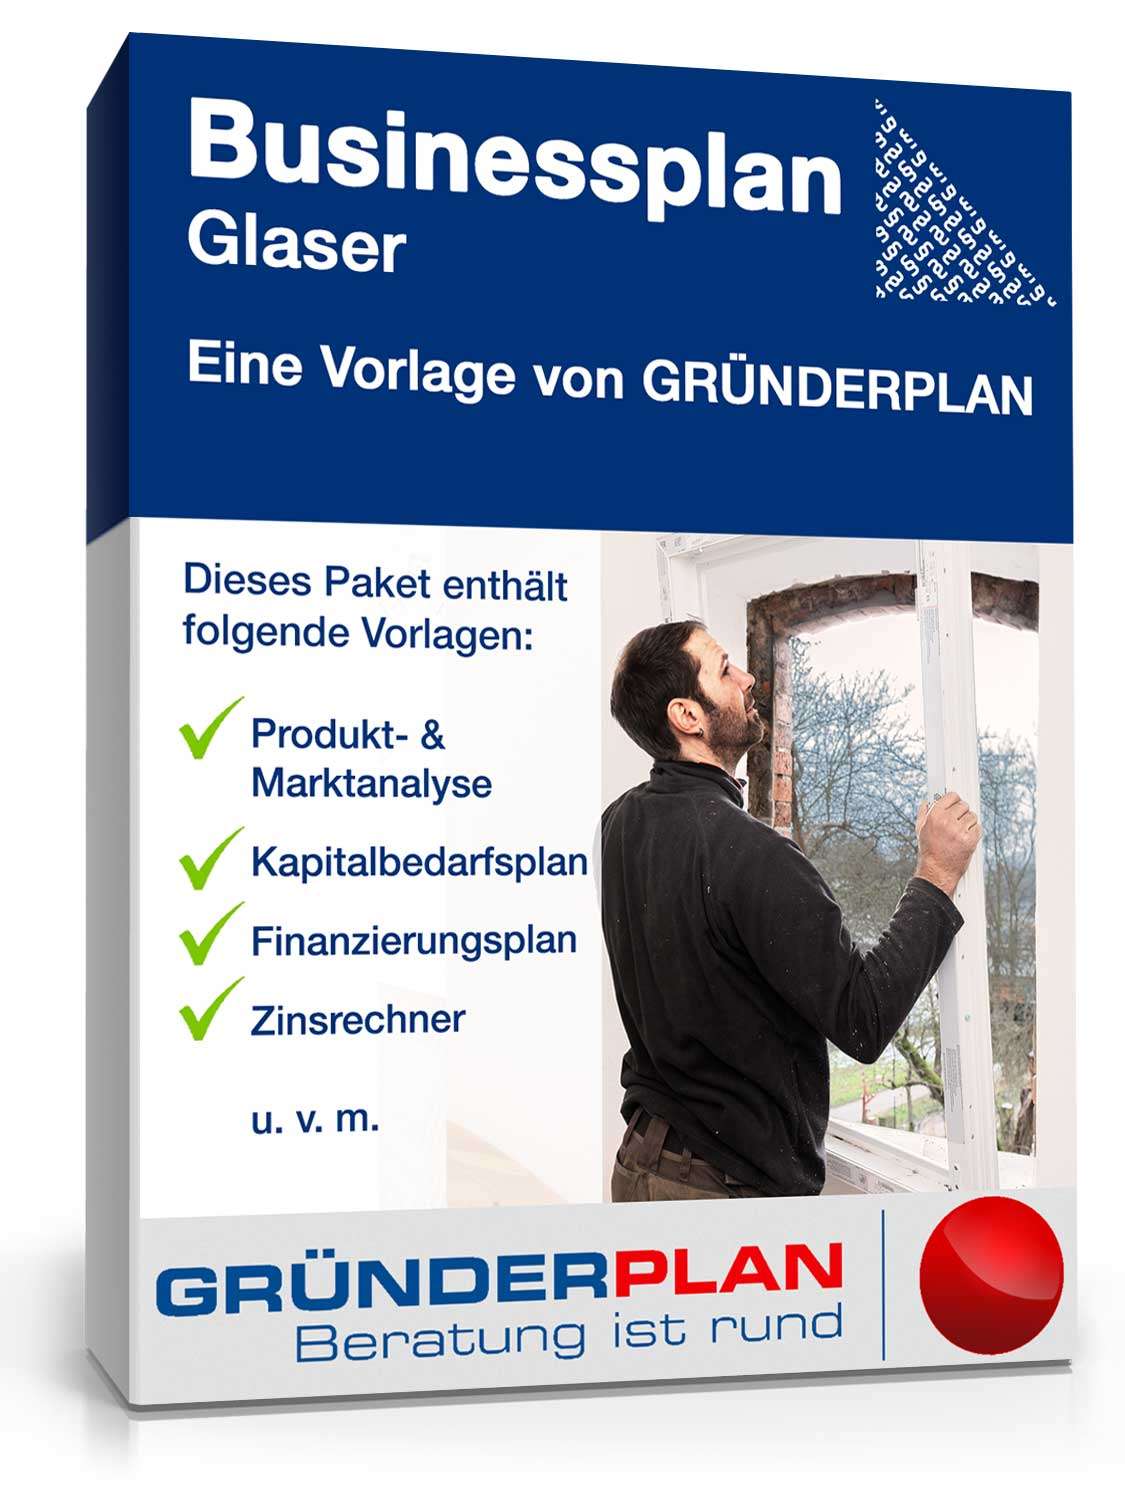 Hauptbild des Produkts: Businessplan Glaser von Gründerplan